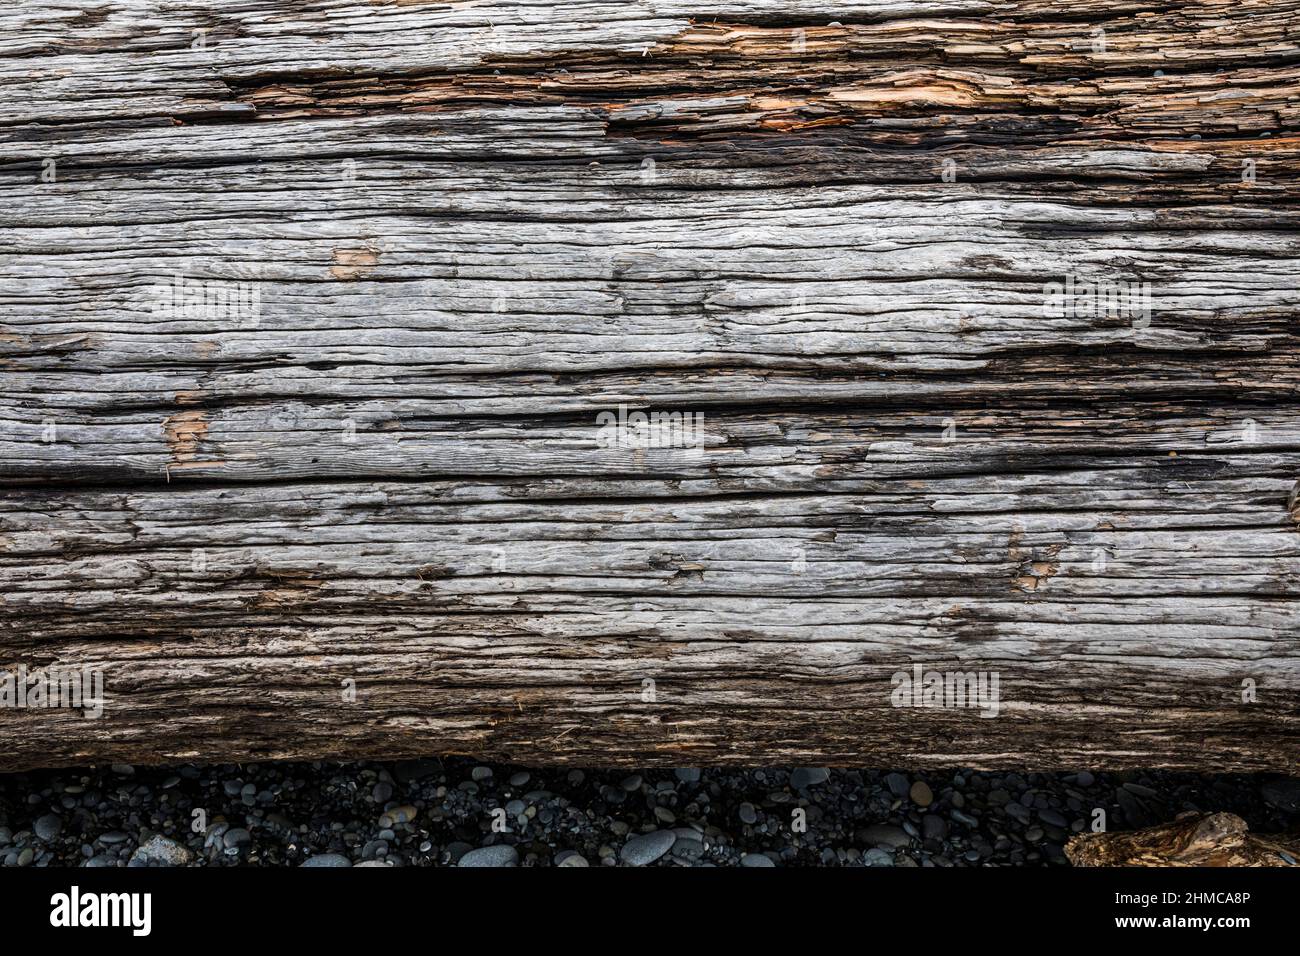 The texture of an beach log / driftwood log. Stock Photo